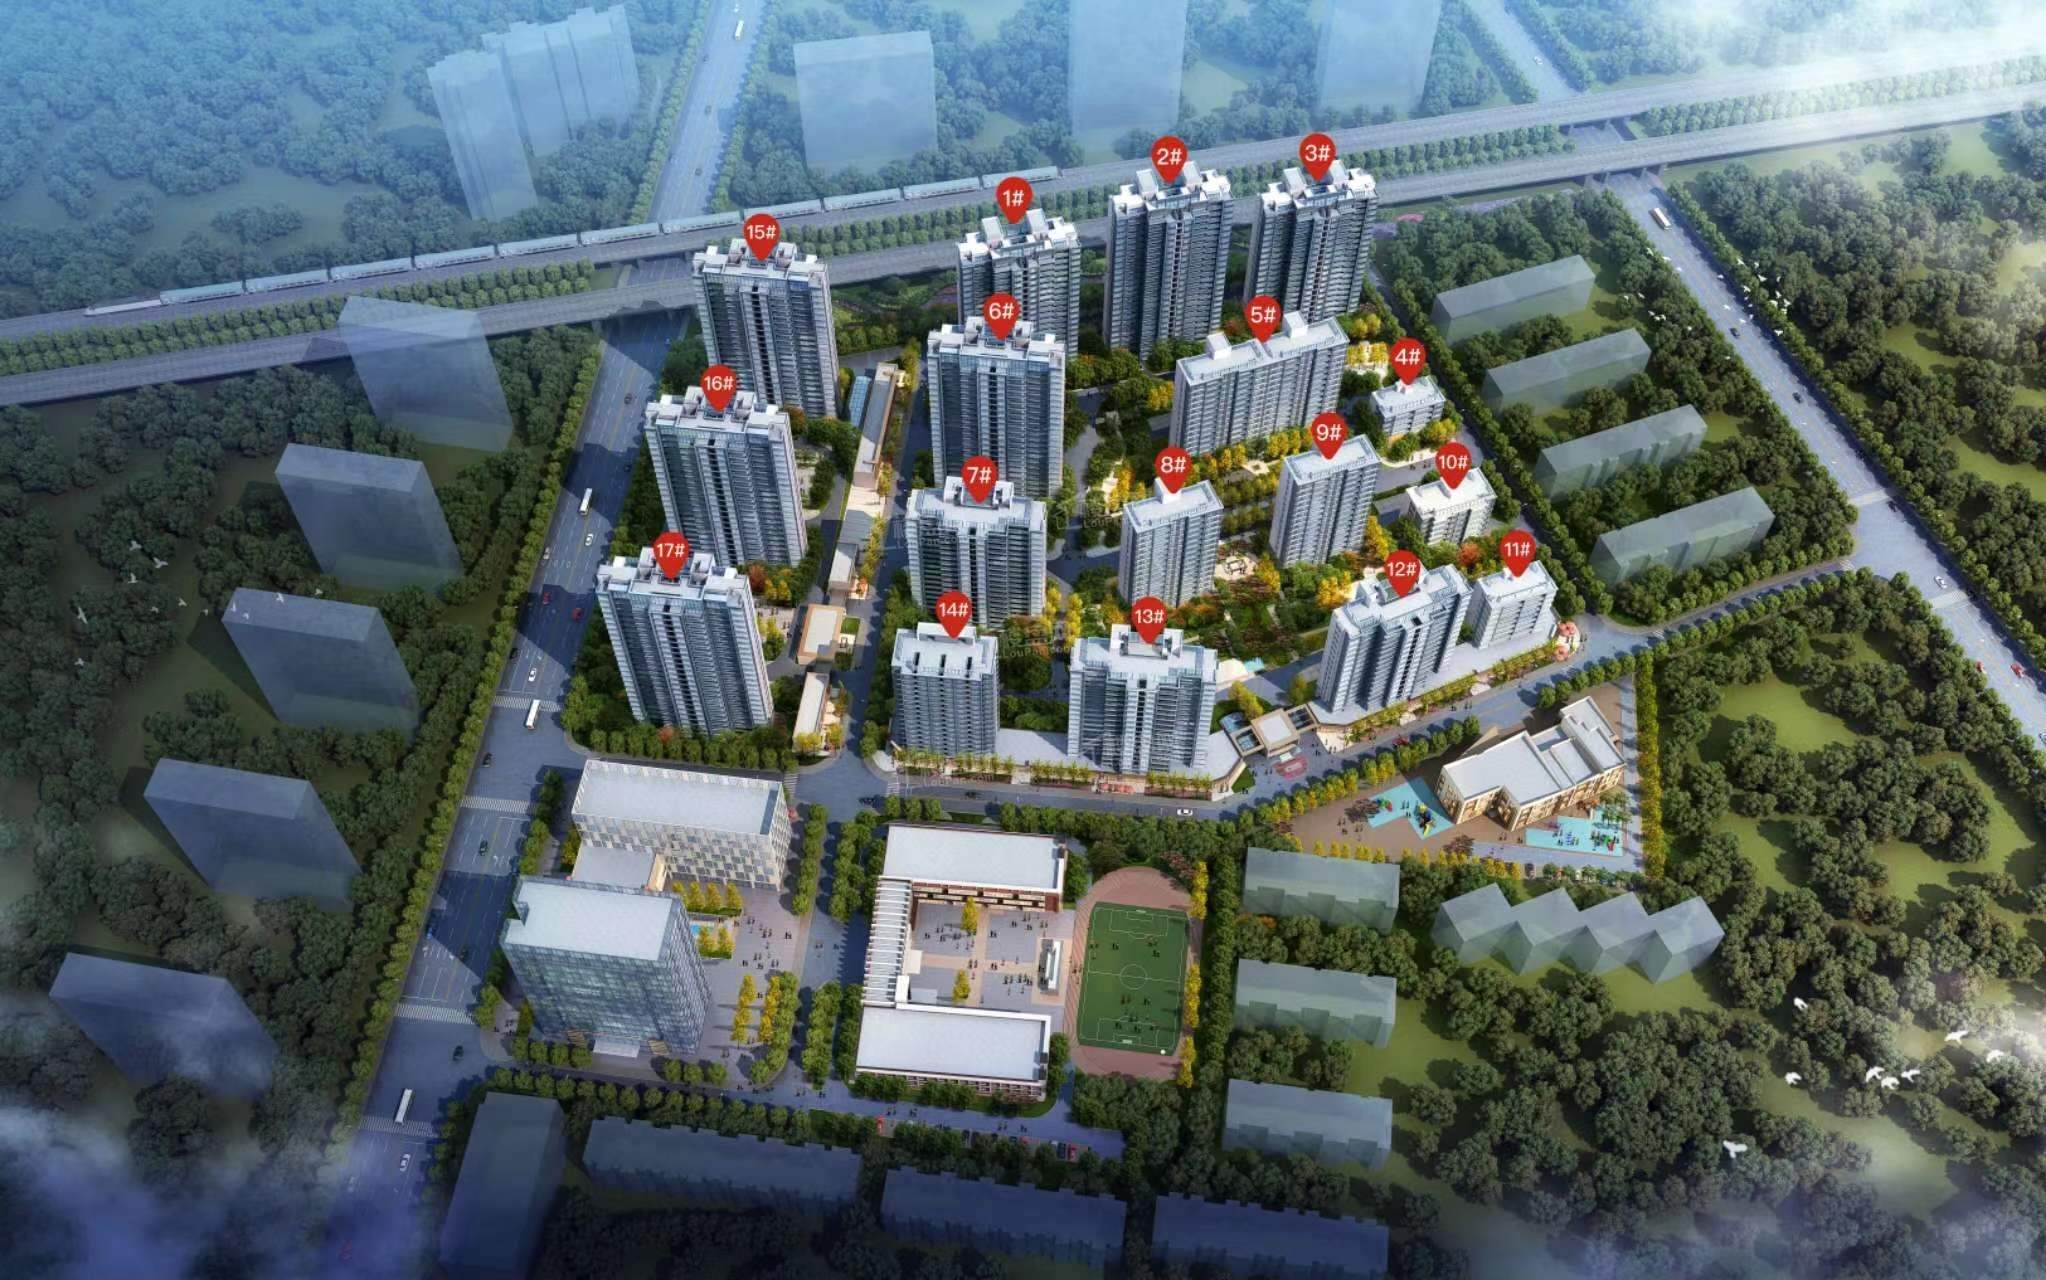 荣盛首府 位于长安区建设大街与华新路交口北行500米处